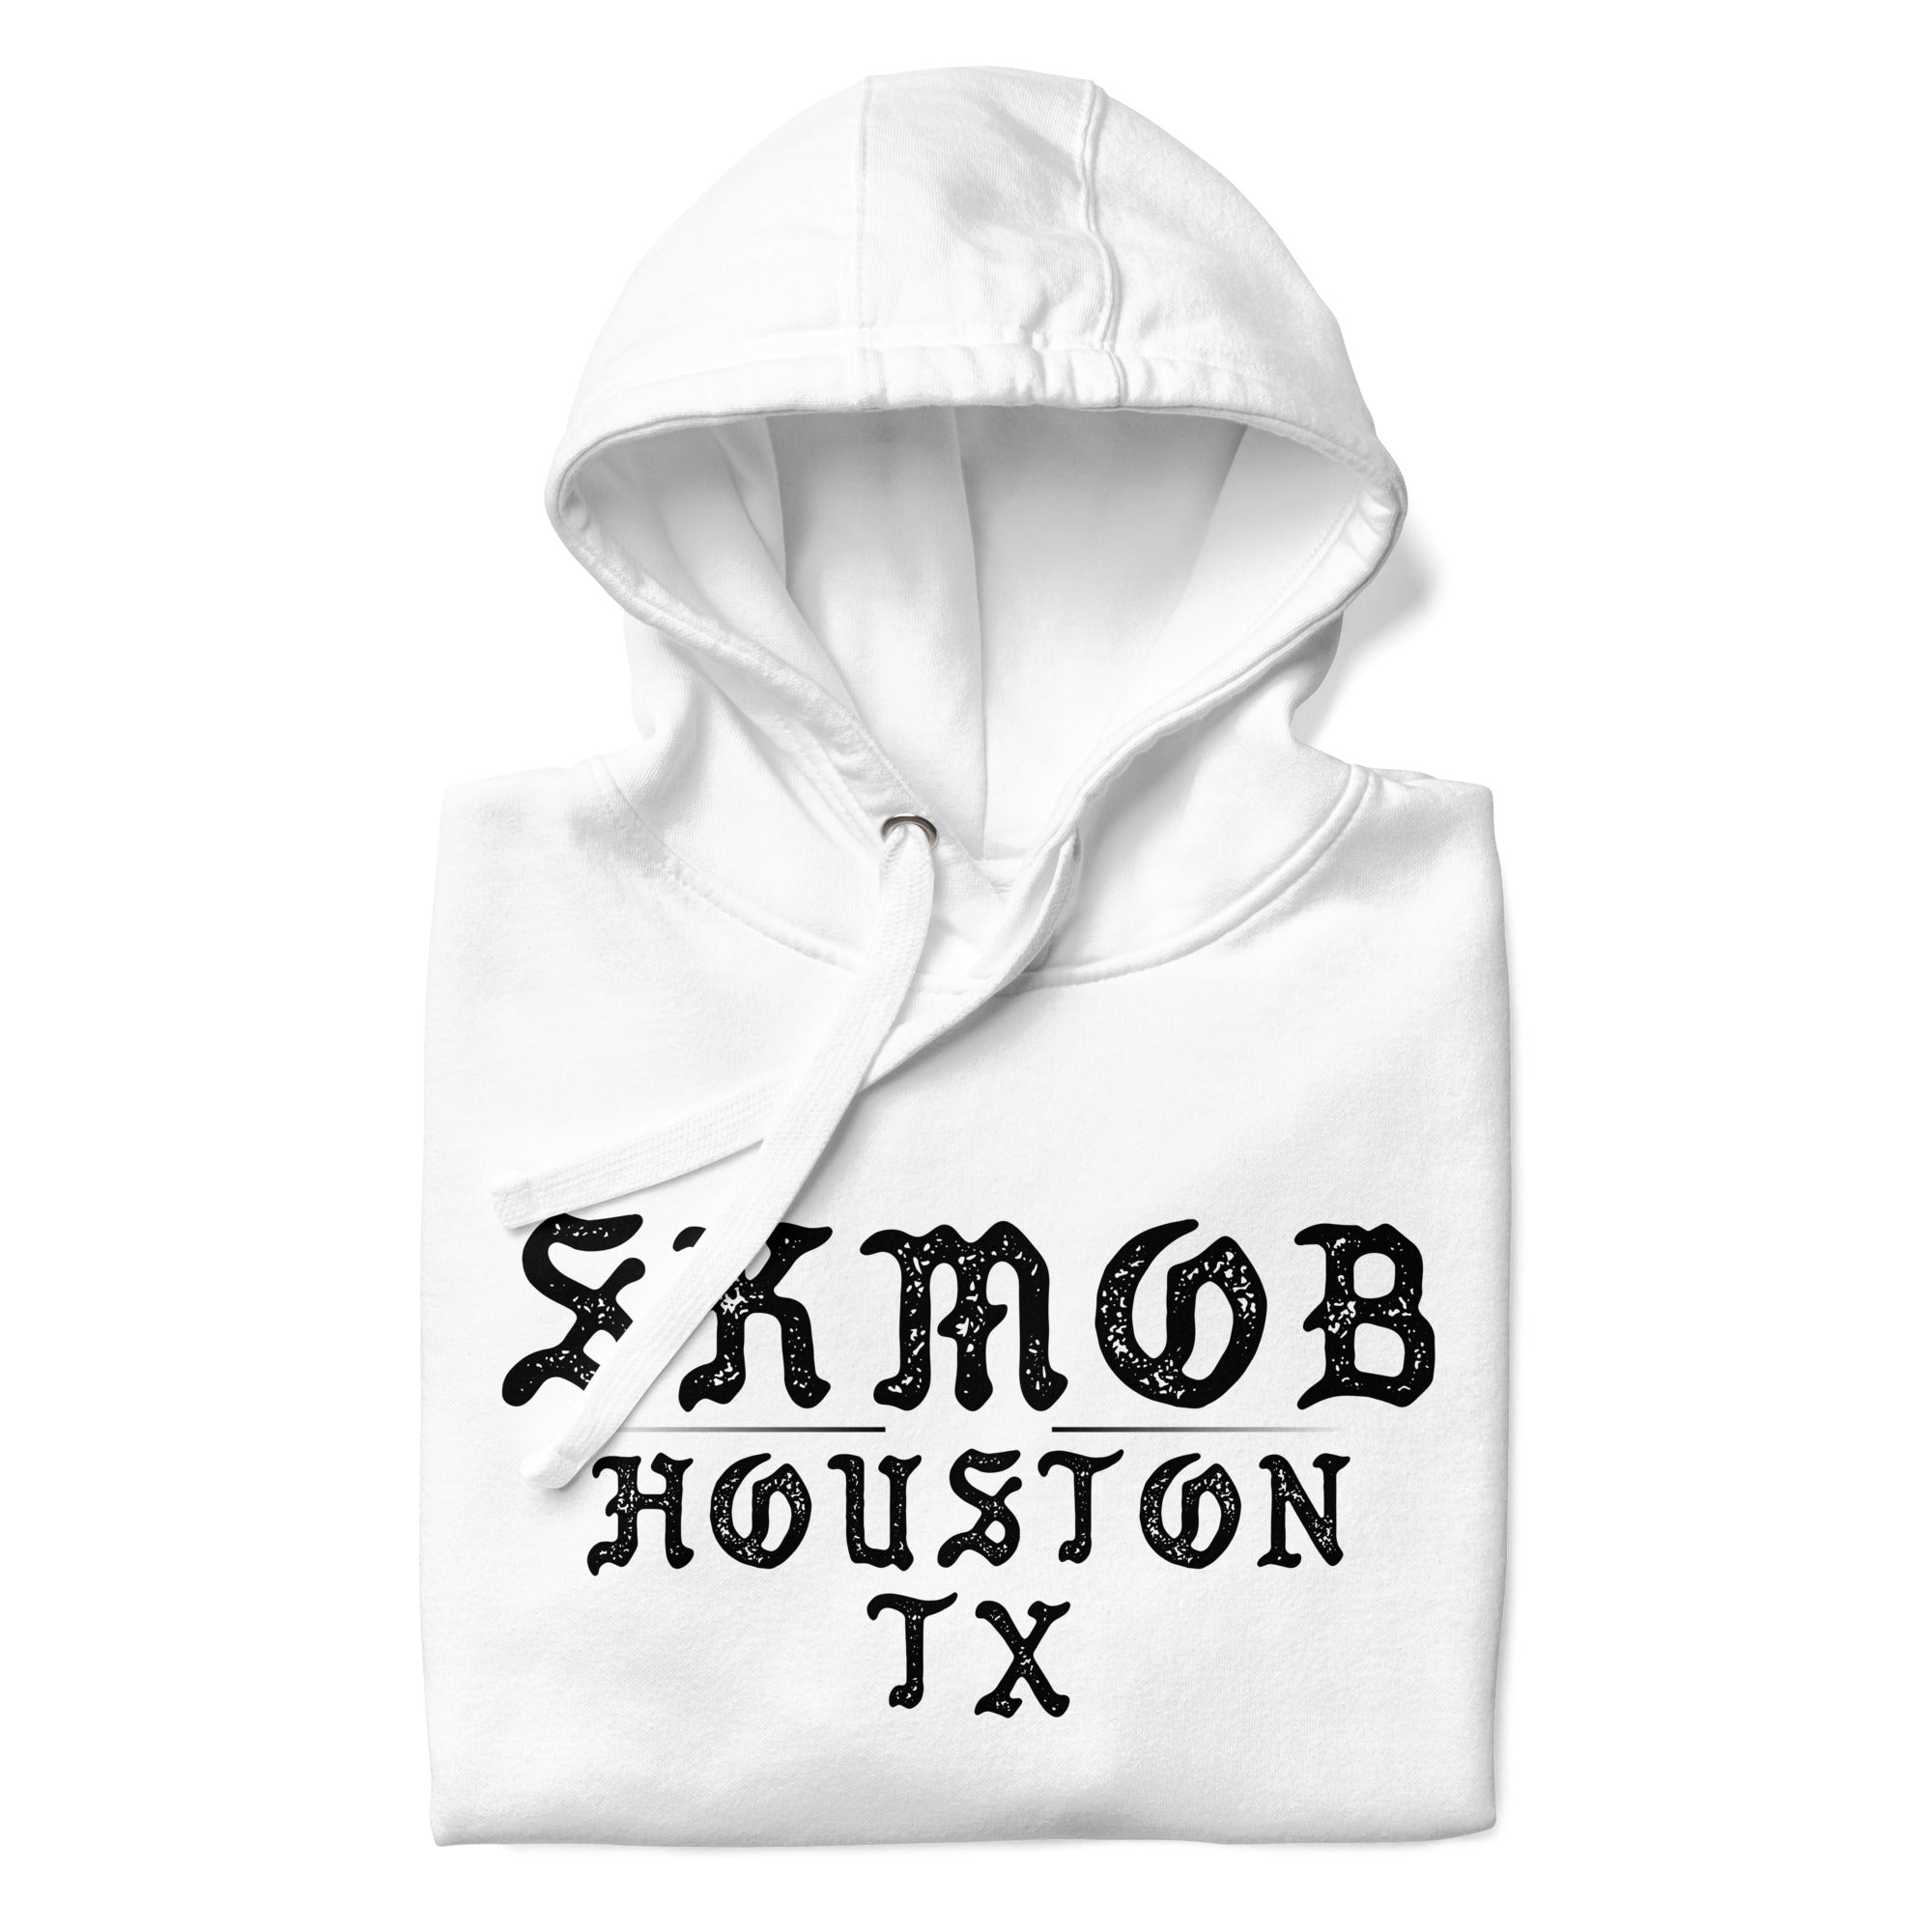 SKMOB Houston Tx Hoodie